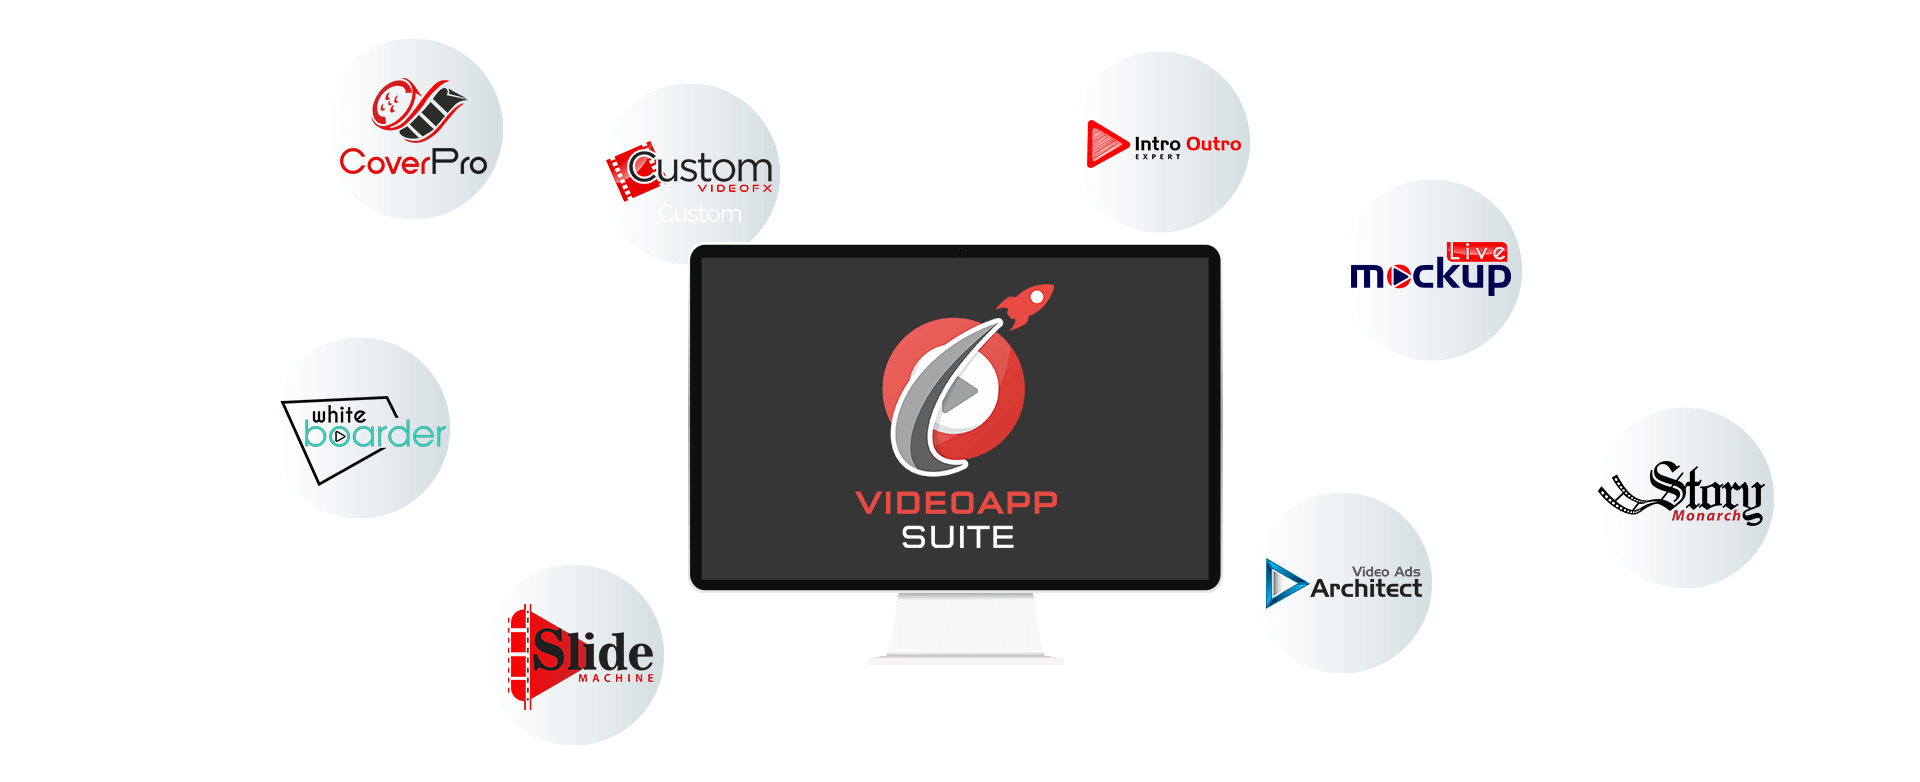 Video-App-Suite-Review-2